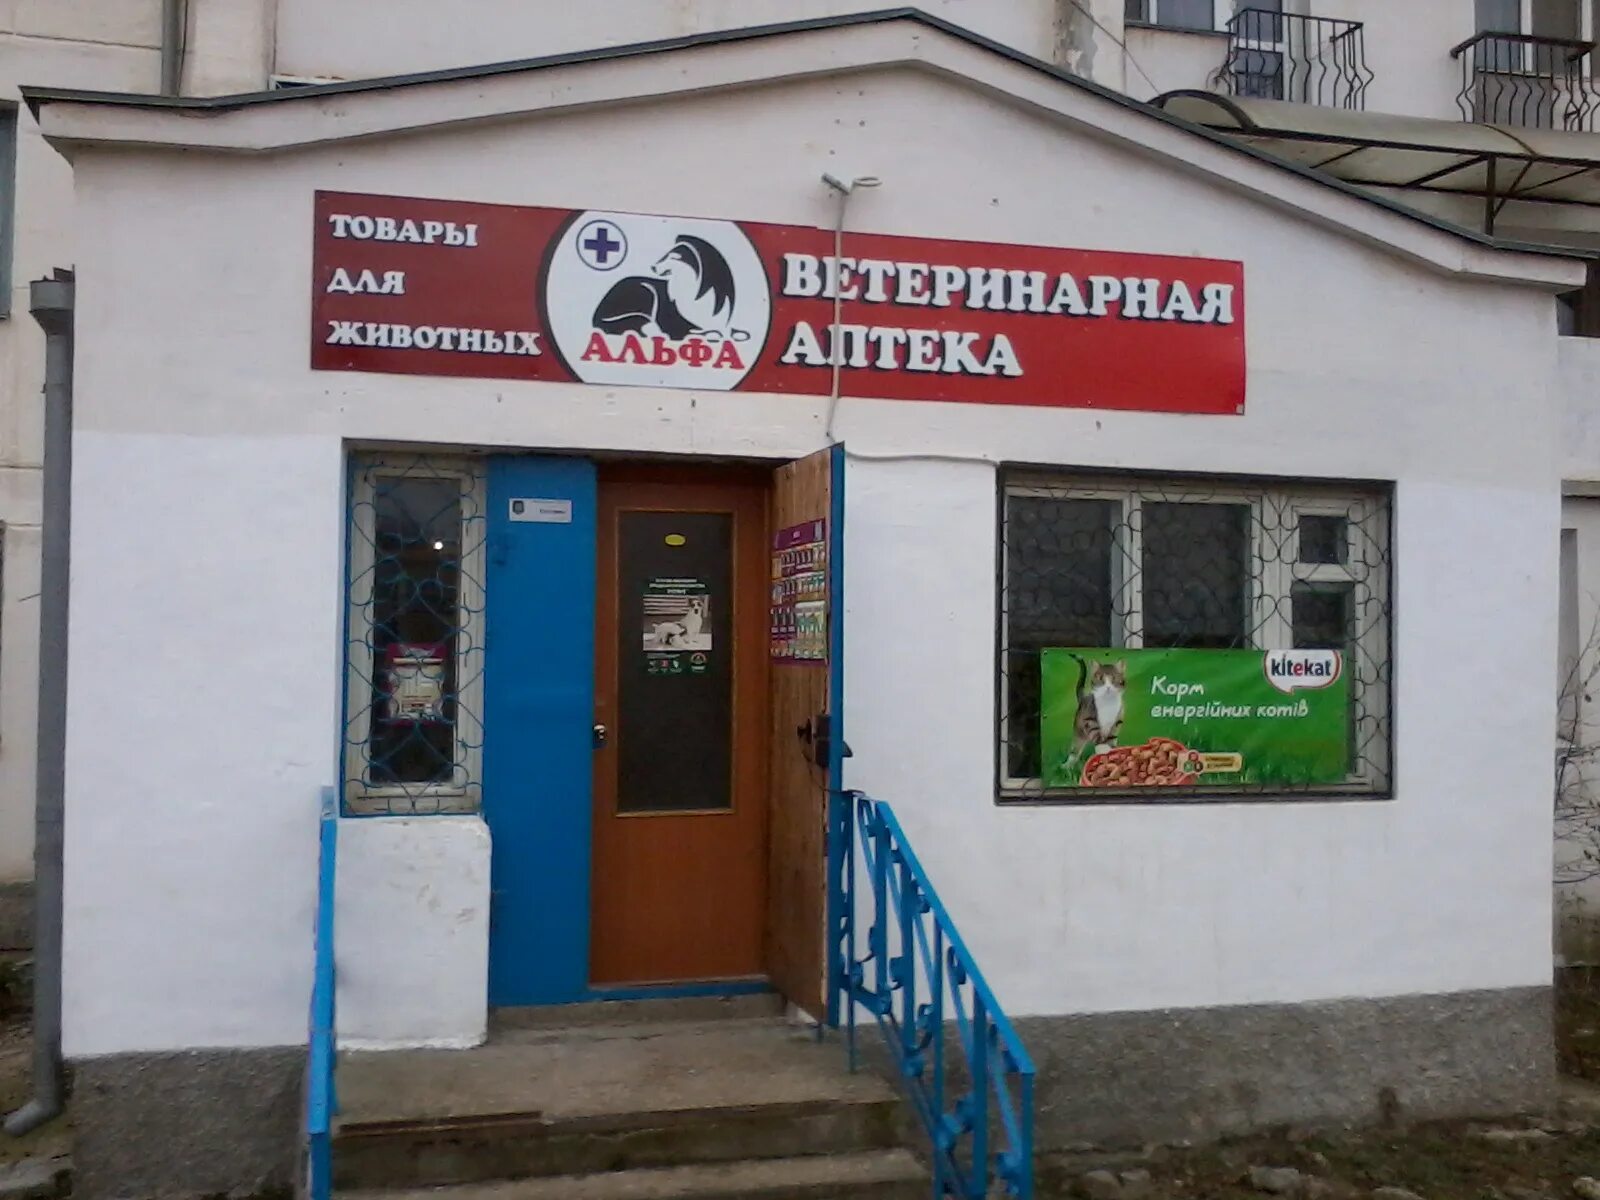 Ветеринарная аптека Шебекино. Альфа ветеринарная клиника Севастополь. Аптека и ветеринарная аптека. Ветеринарная аптека Кызыл.